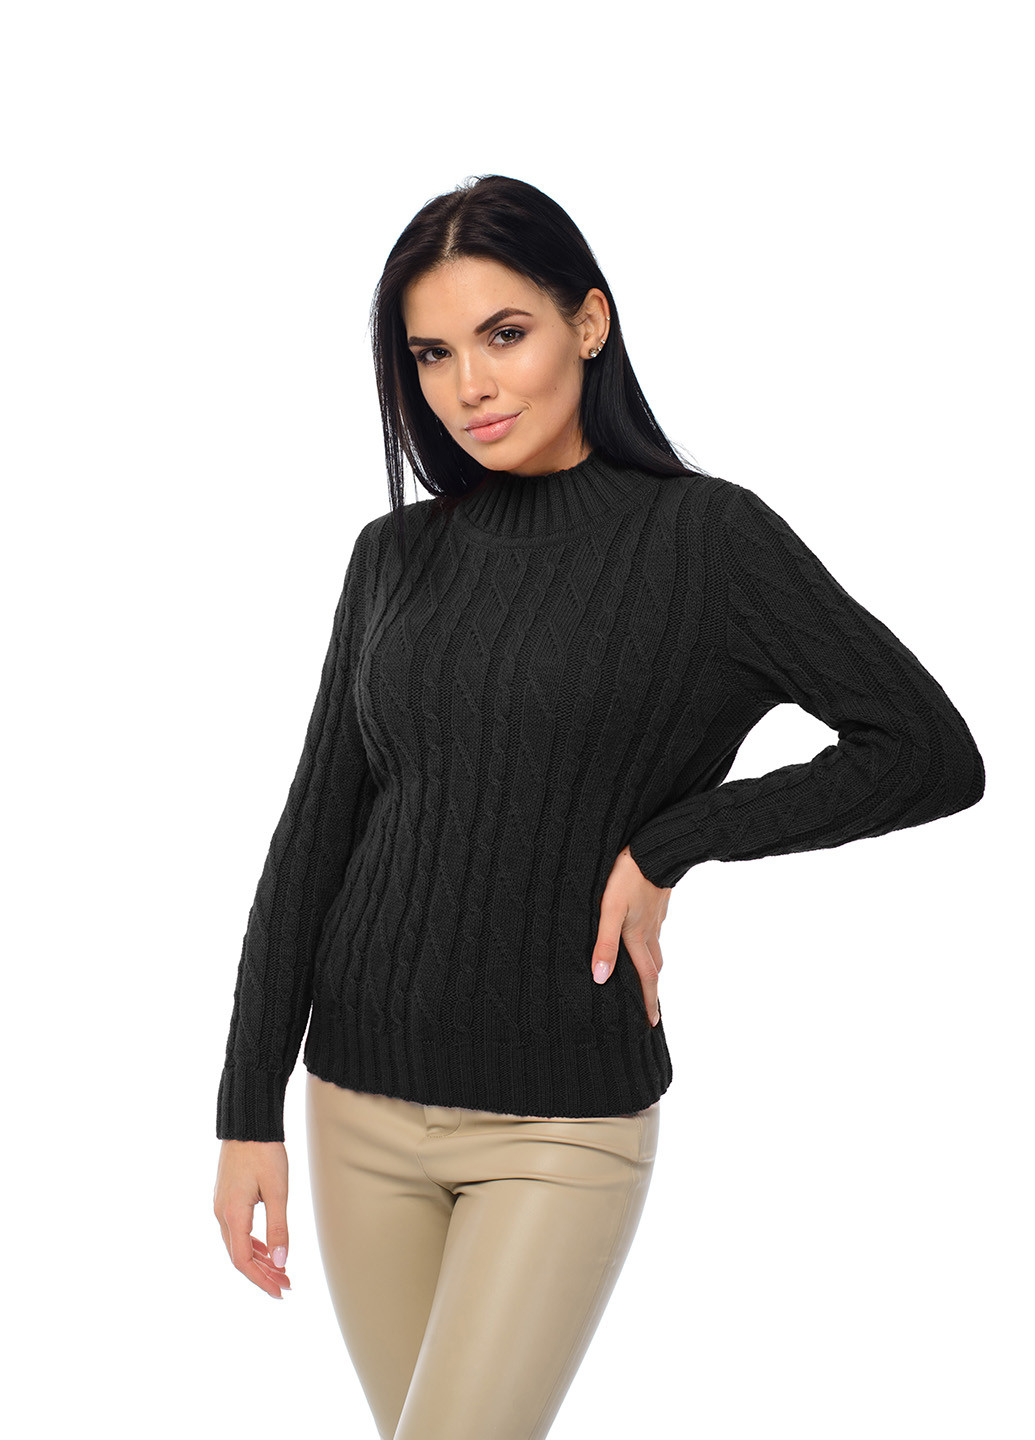 Чорний жіночий м'який светр з коміром стійка SVTR